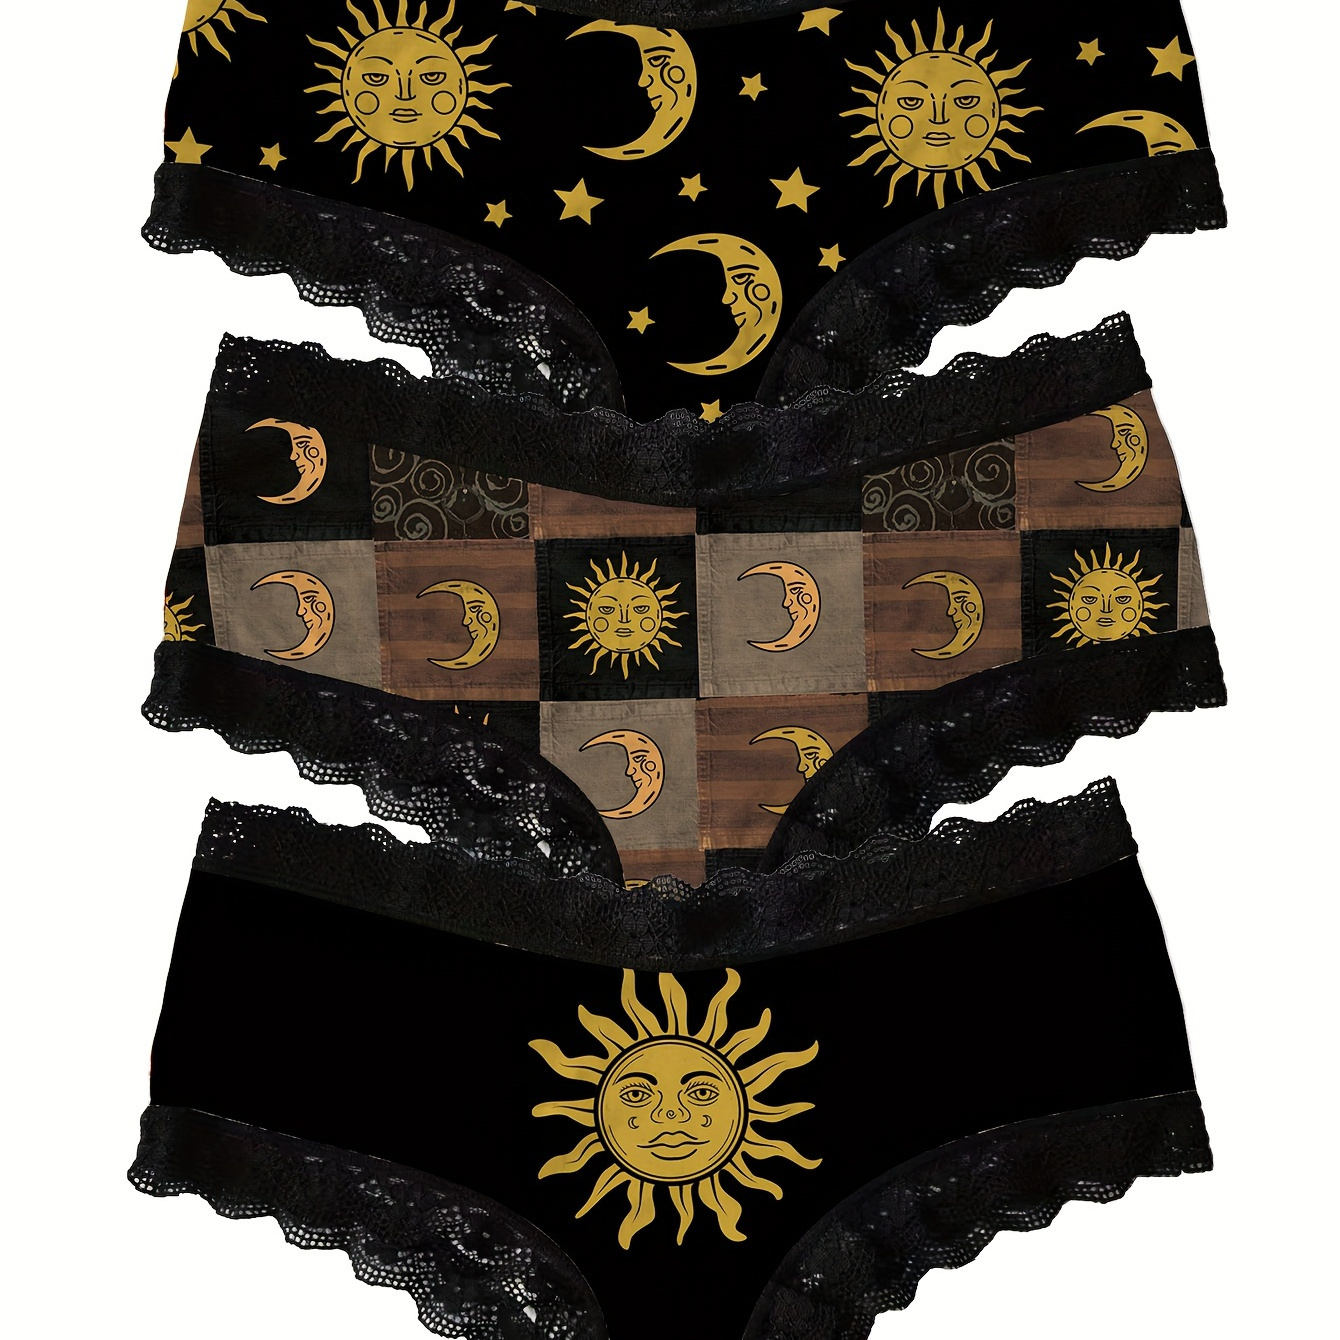 

3pcs Moon & Sun Print Lace Trim Briefs, Comfy Breathable Stretchy Intimates Panties, Women's Lingerie & Underwear